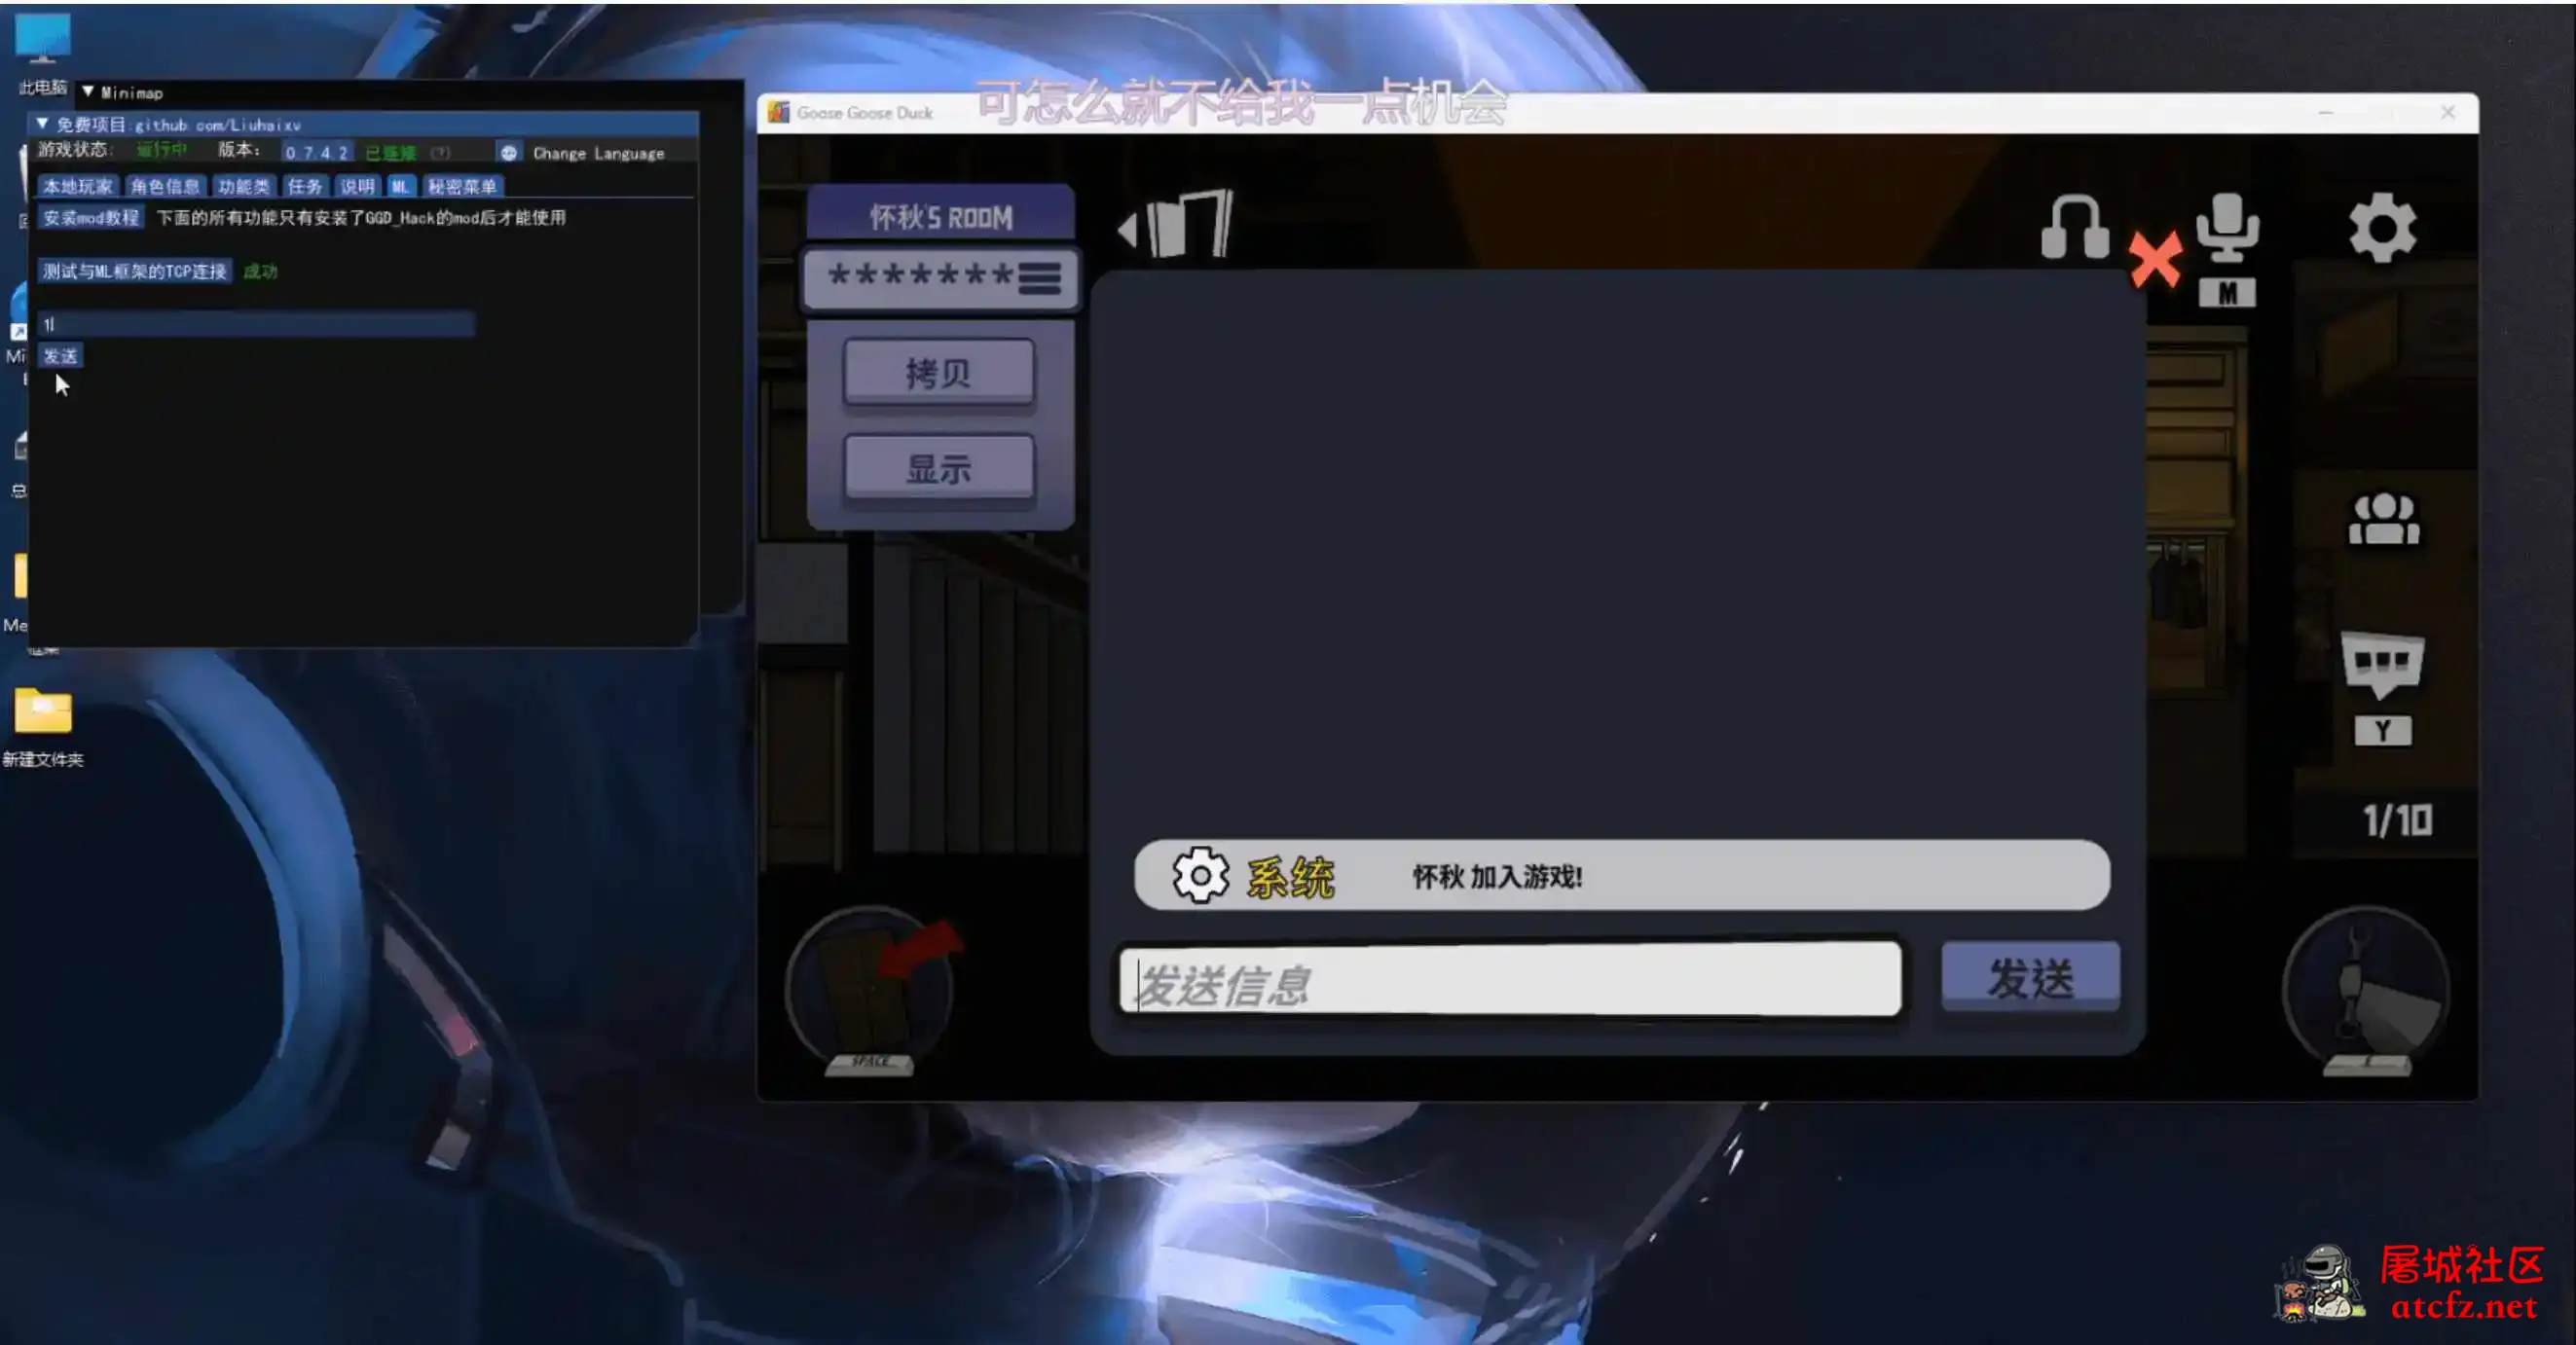 鹅鸭杀Minimp显玩家传送无冷却穿墙多功能辅助v1.5.1 屠城辅助网www.tcfz1.com9474